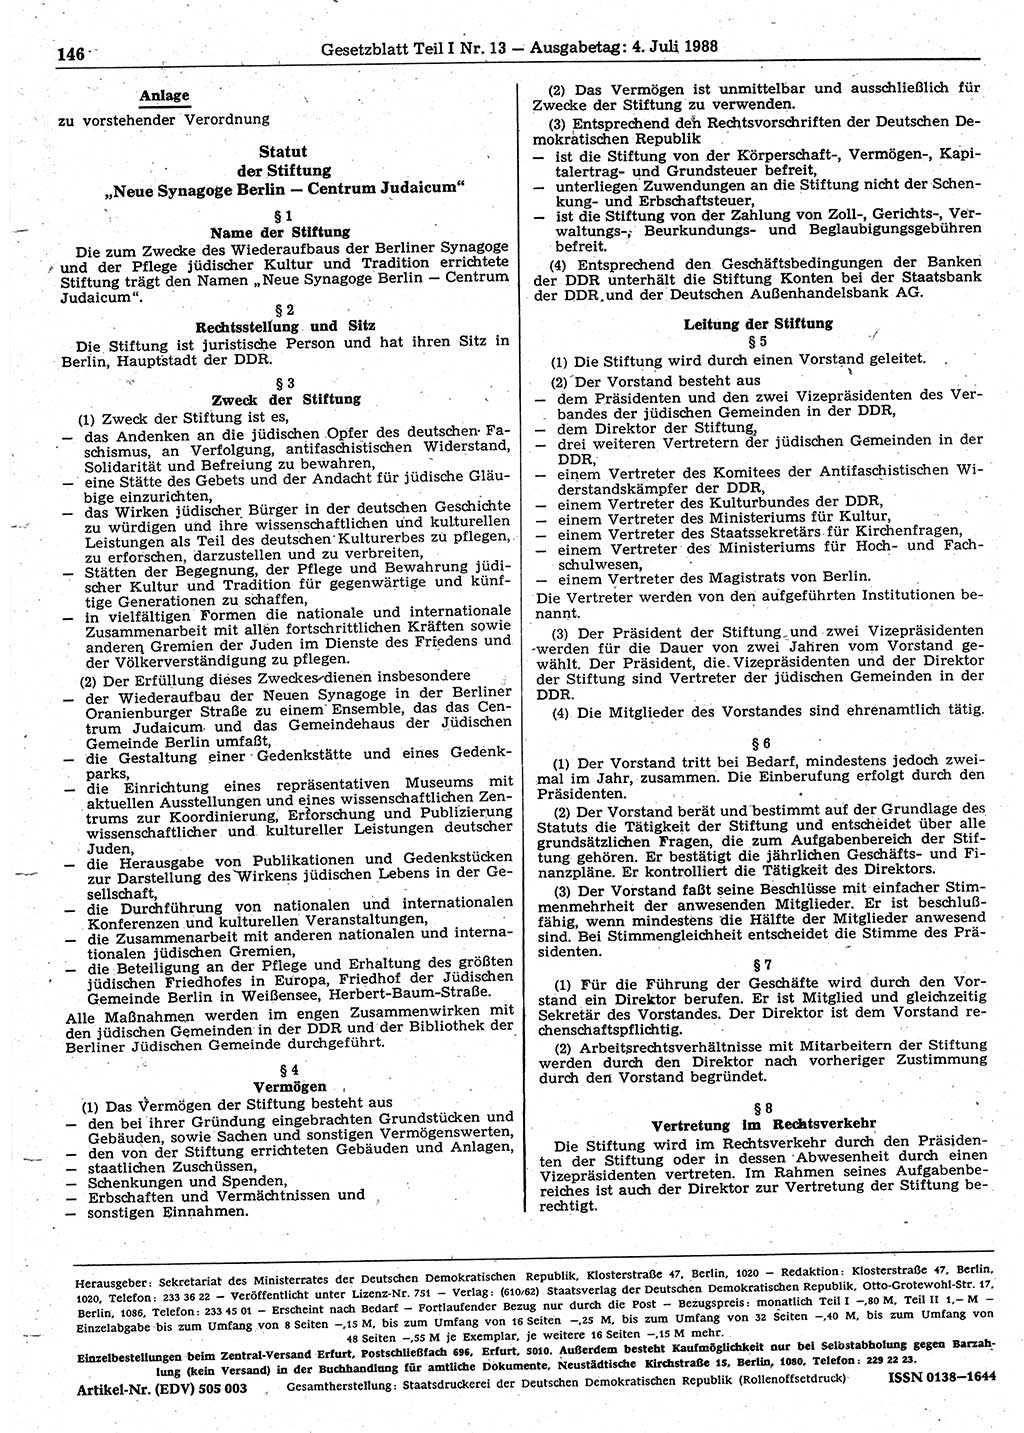 Gesetzblatt (GBl.) der Deutschen Demokratischen Republik (DDR) Teil Ⅰ 1988, Seite 146 (GBl. DDR Ⅰ 1988, S. 146)